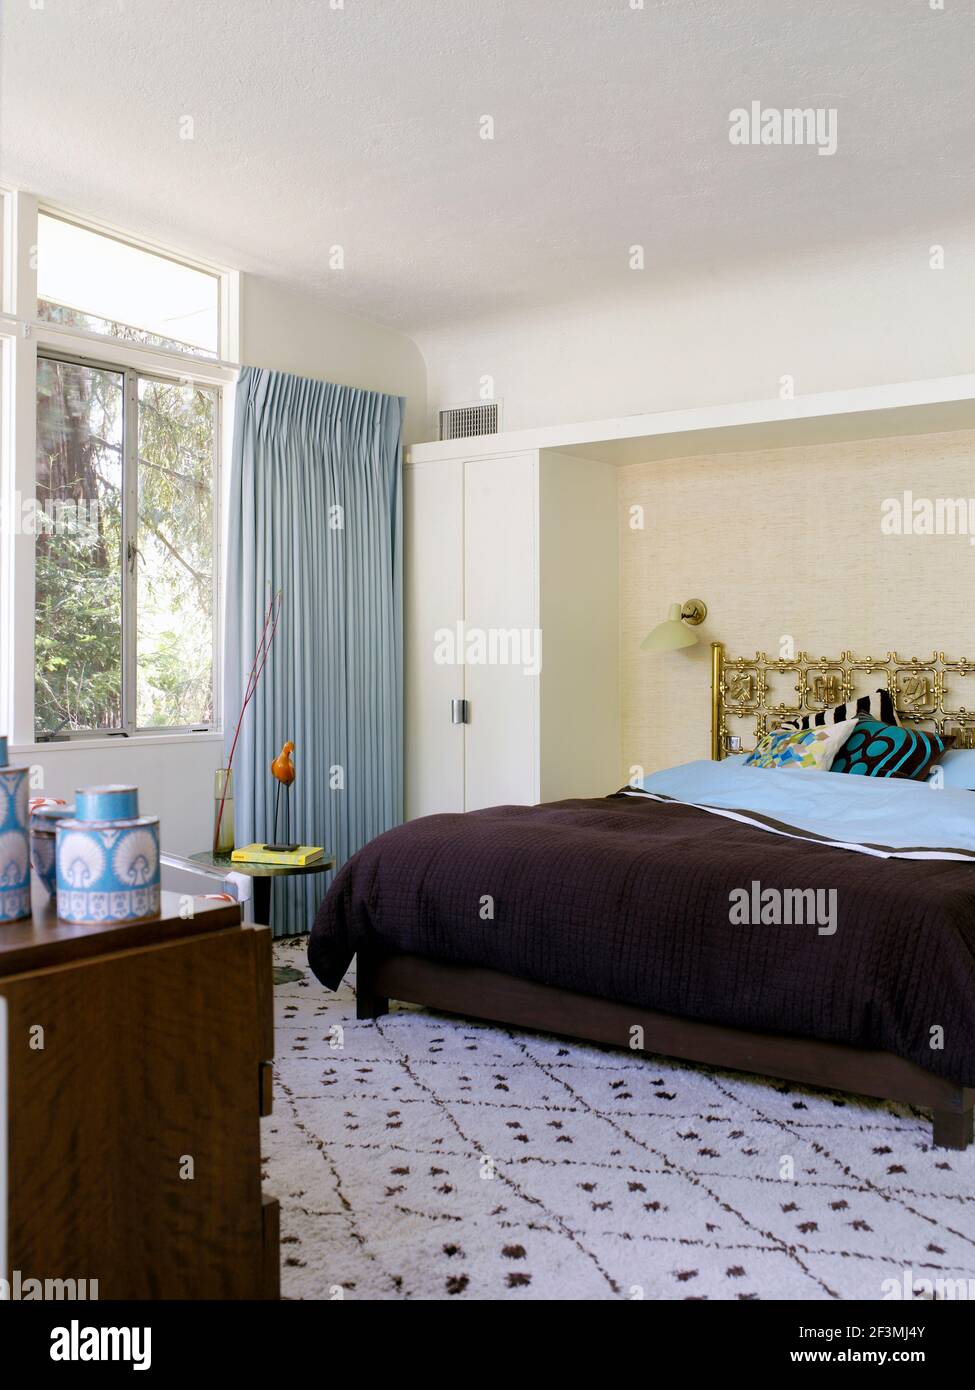 Chambre avec moquette et rideaux bleu clair dans la maison de Californie, États-Unis. Banque D'Images